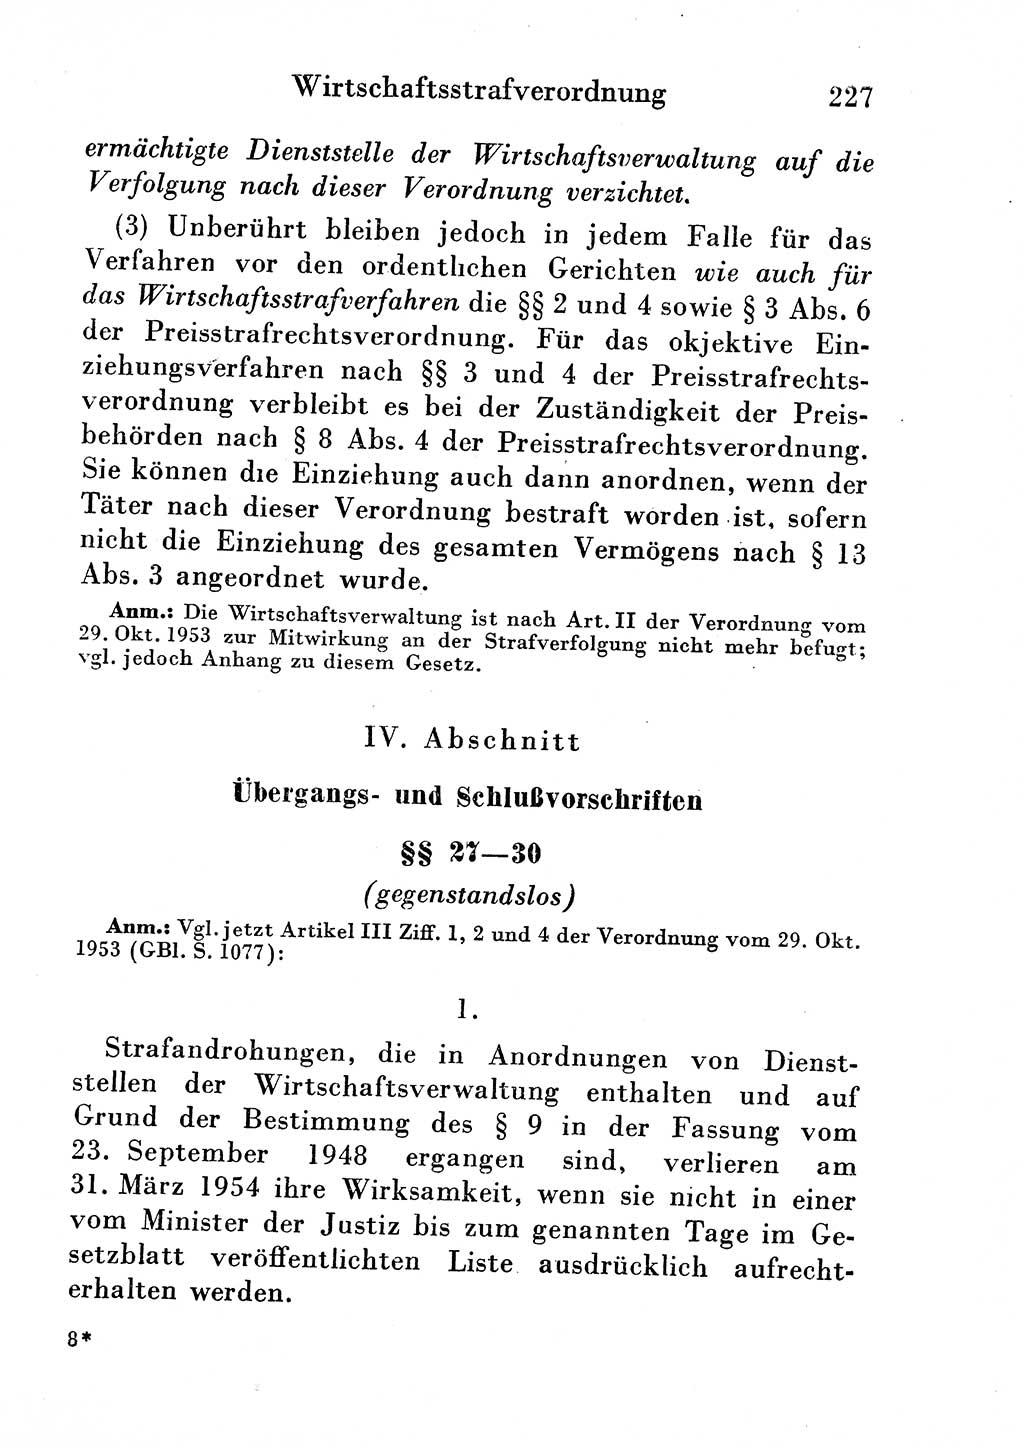 Strafgesetzbuch (StGB) und andere Strafgesetze [Deutsche Demokratische Republik (DDR)] 1954, Seite 227 (StGB Strafges. DDR 1954, S. 227)